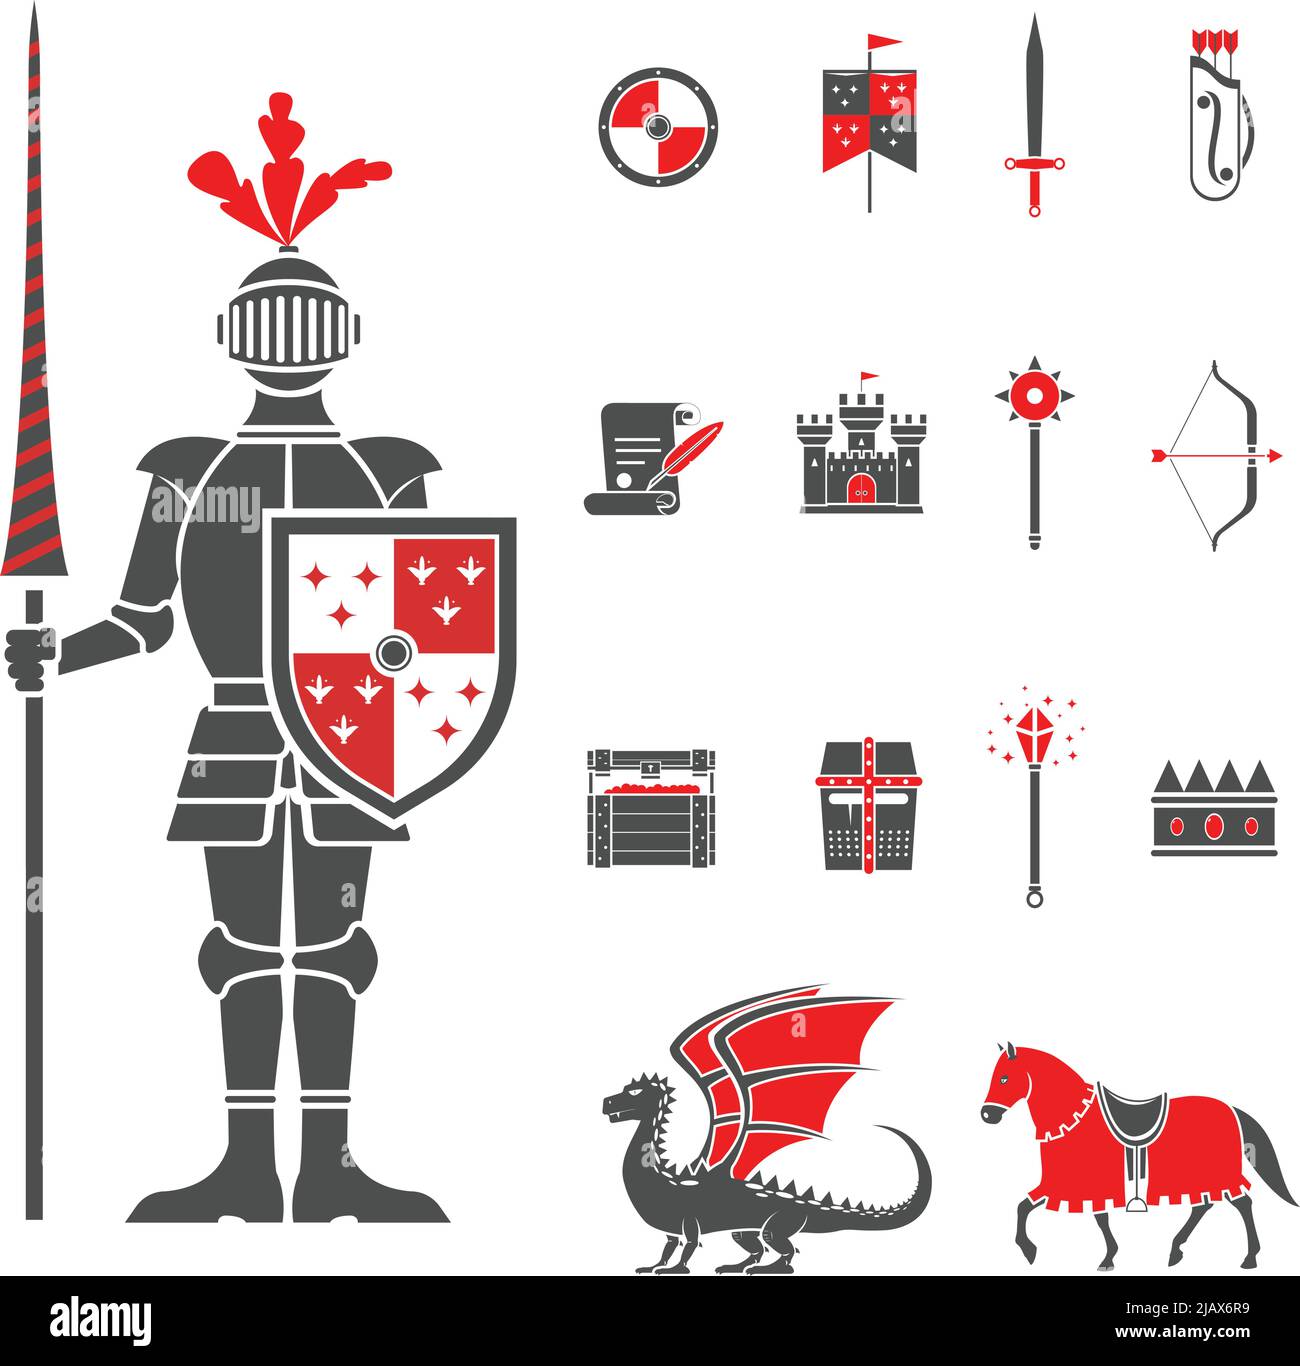 Chevalier château médiéval avec lance et icônes de bouclier et rouge dragon noir abstrait illustration de vecteur isolé Illustration de Vecteur